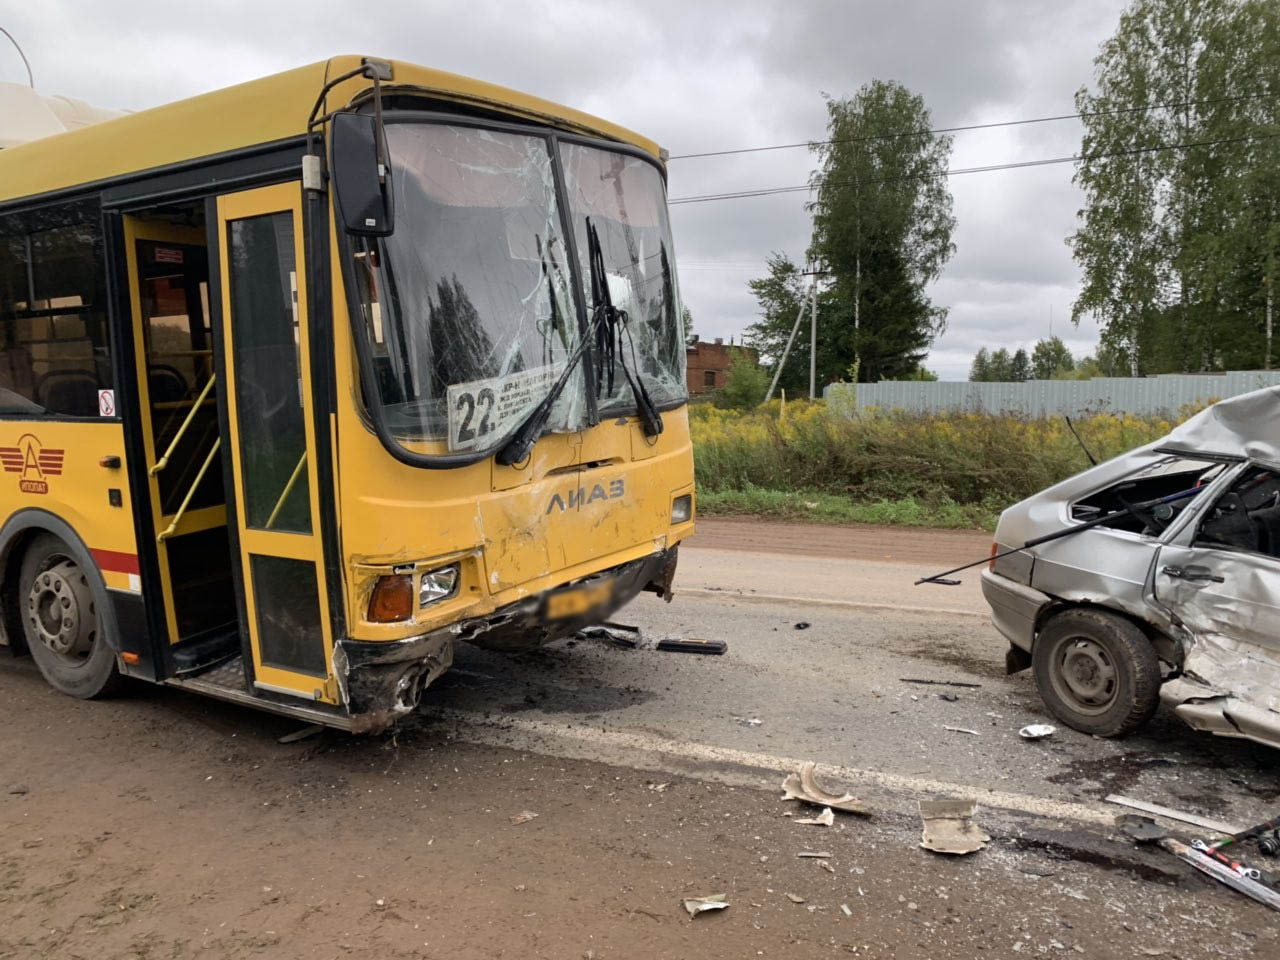 Пять человек пострадали в аварии автобуса и легковушки в Ижевске